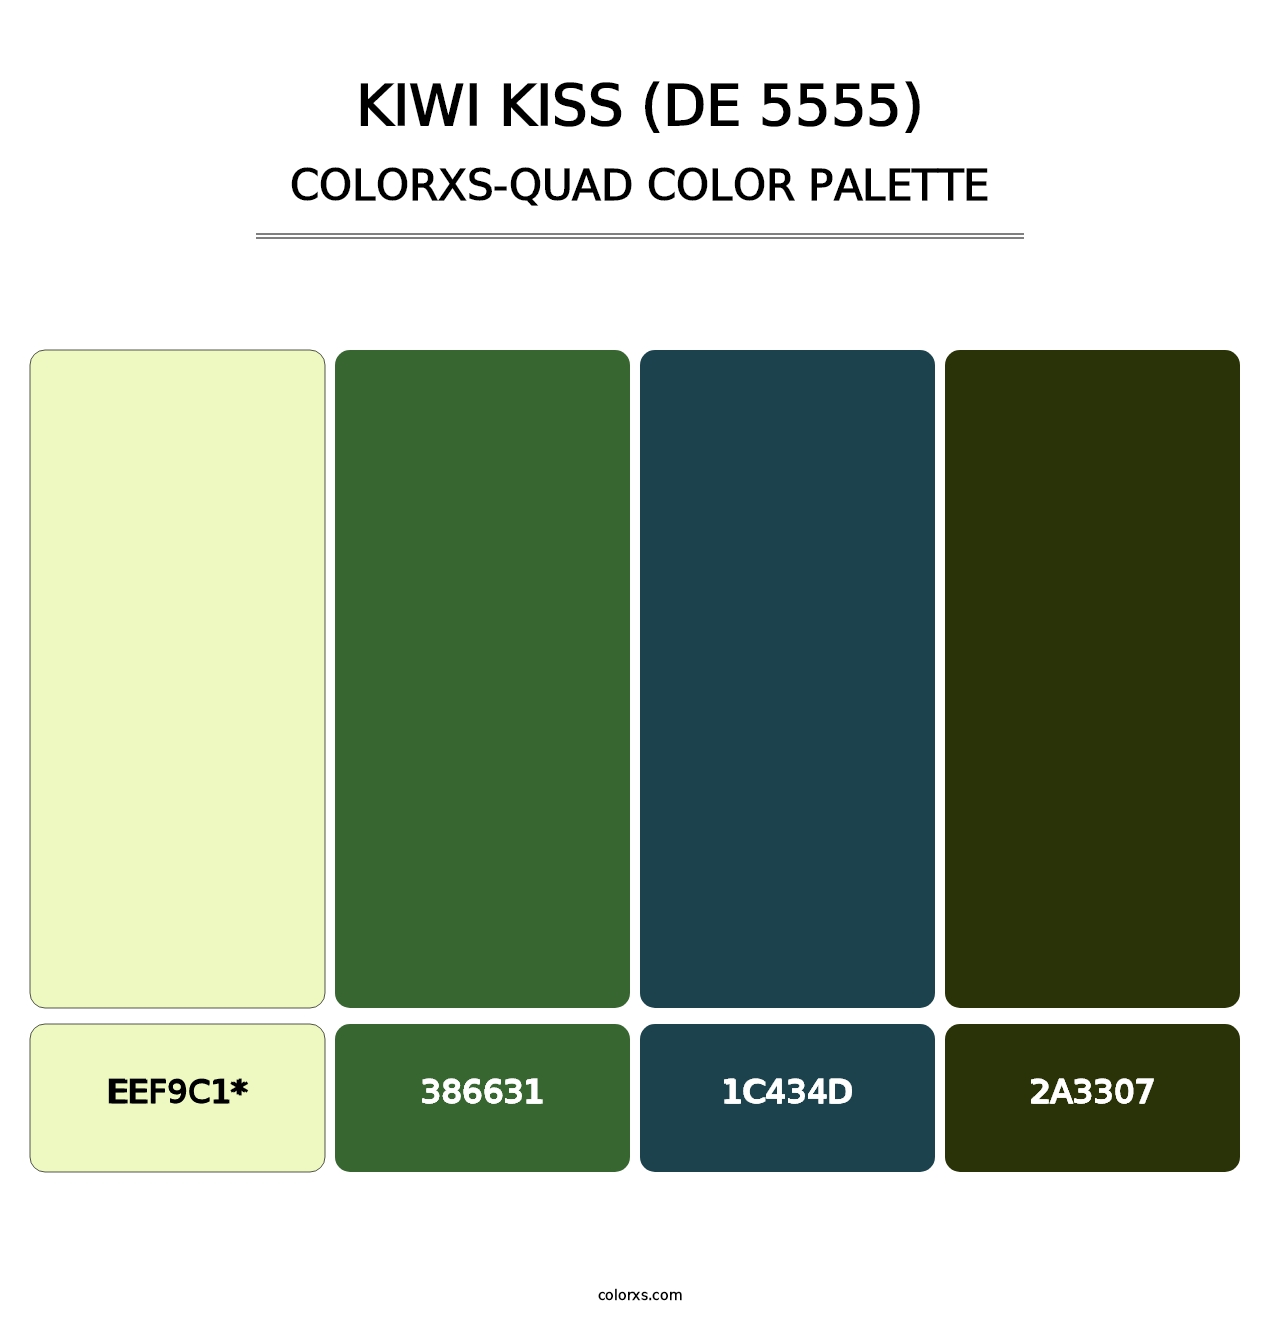 Kiwi Kiss (DE 5555) - Colorxs Quad Palette